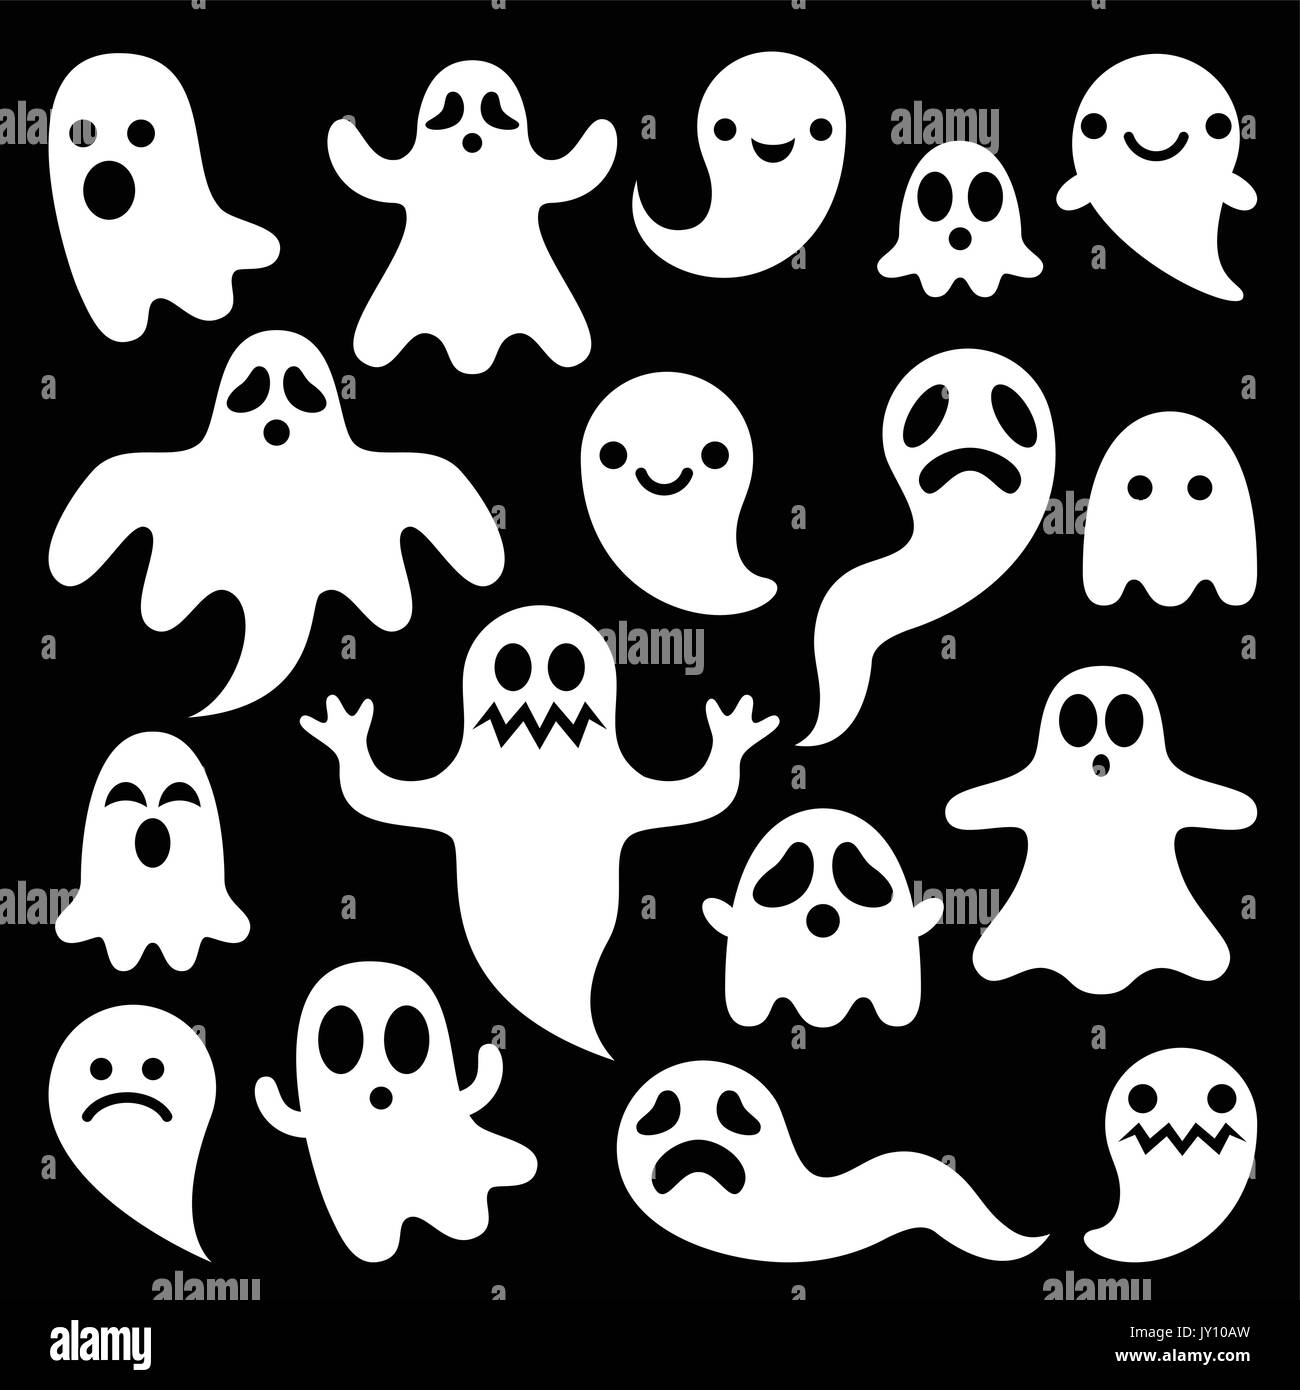 Fantômes effrayants design, personnages de l'Halloween icons set Vector icons set pour l'Halloween - cartoon caractères ghost isolated on black Illustration de Vecteur